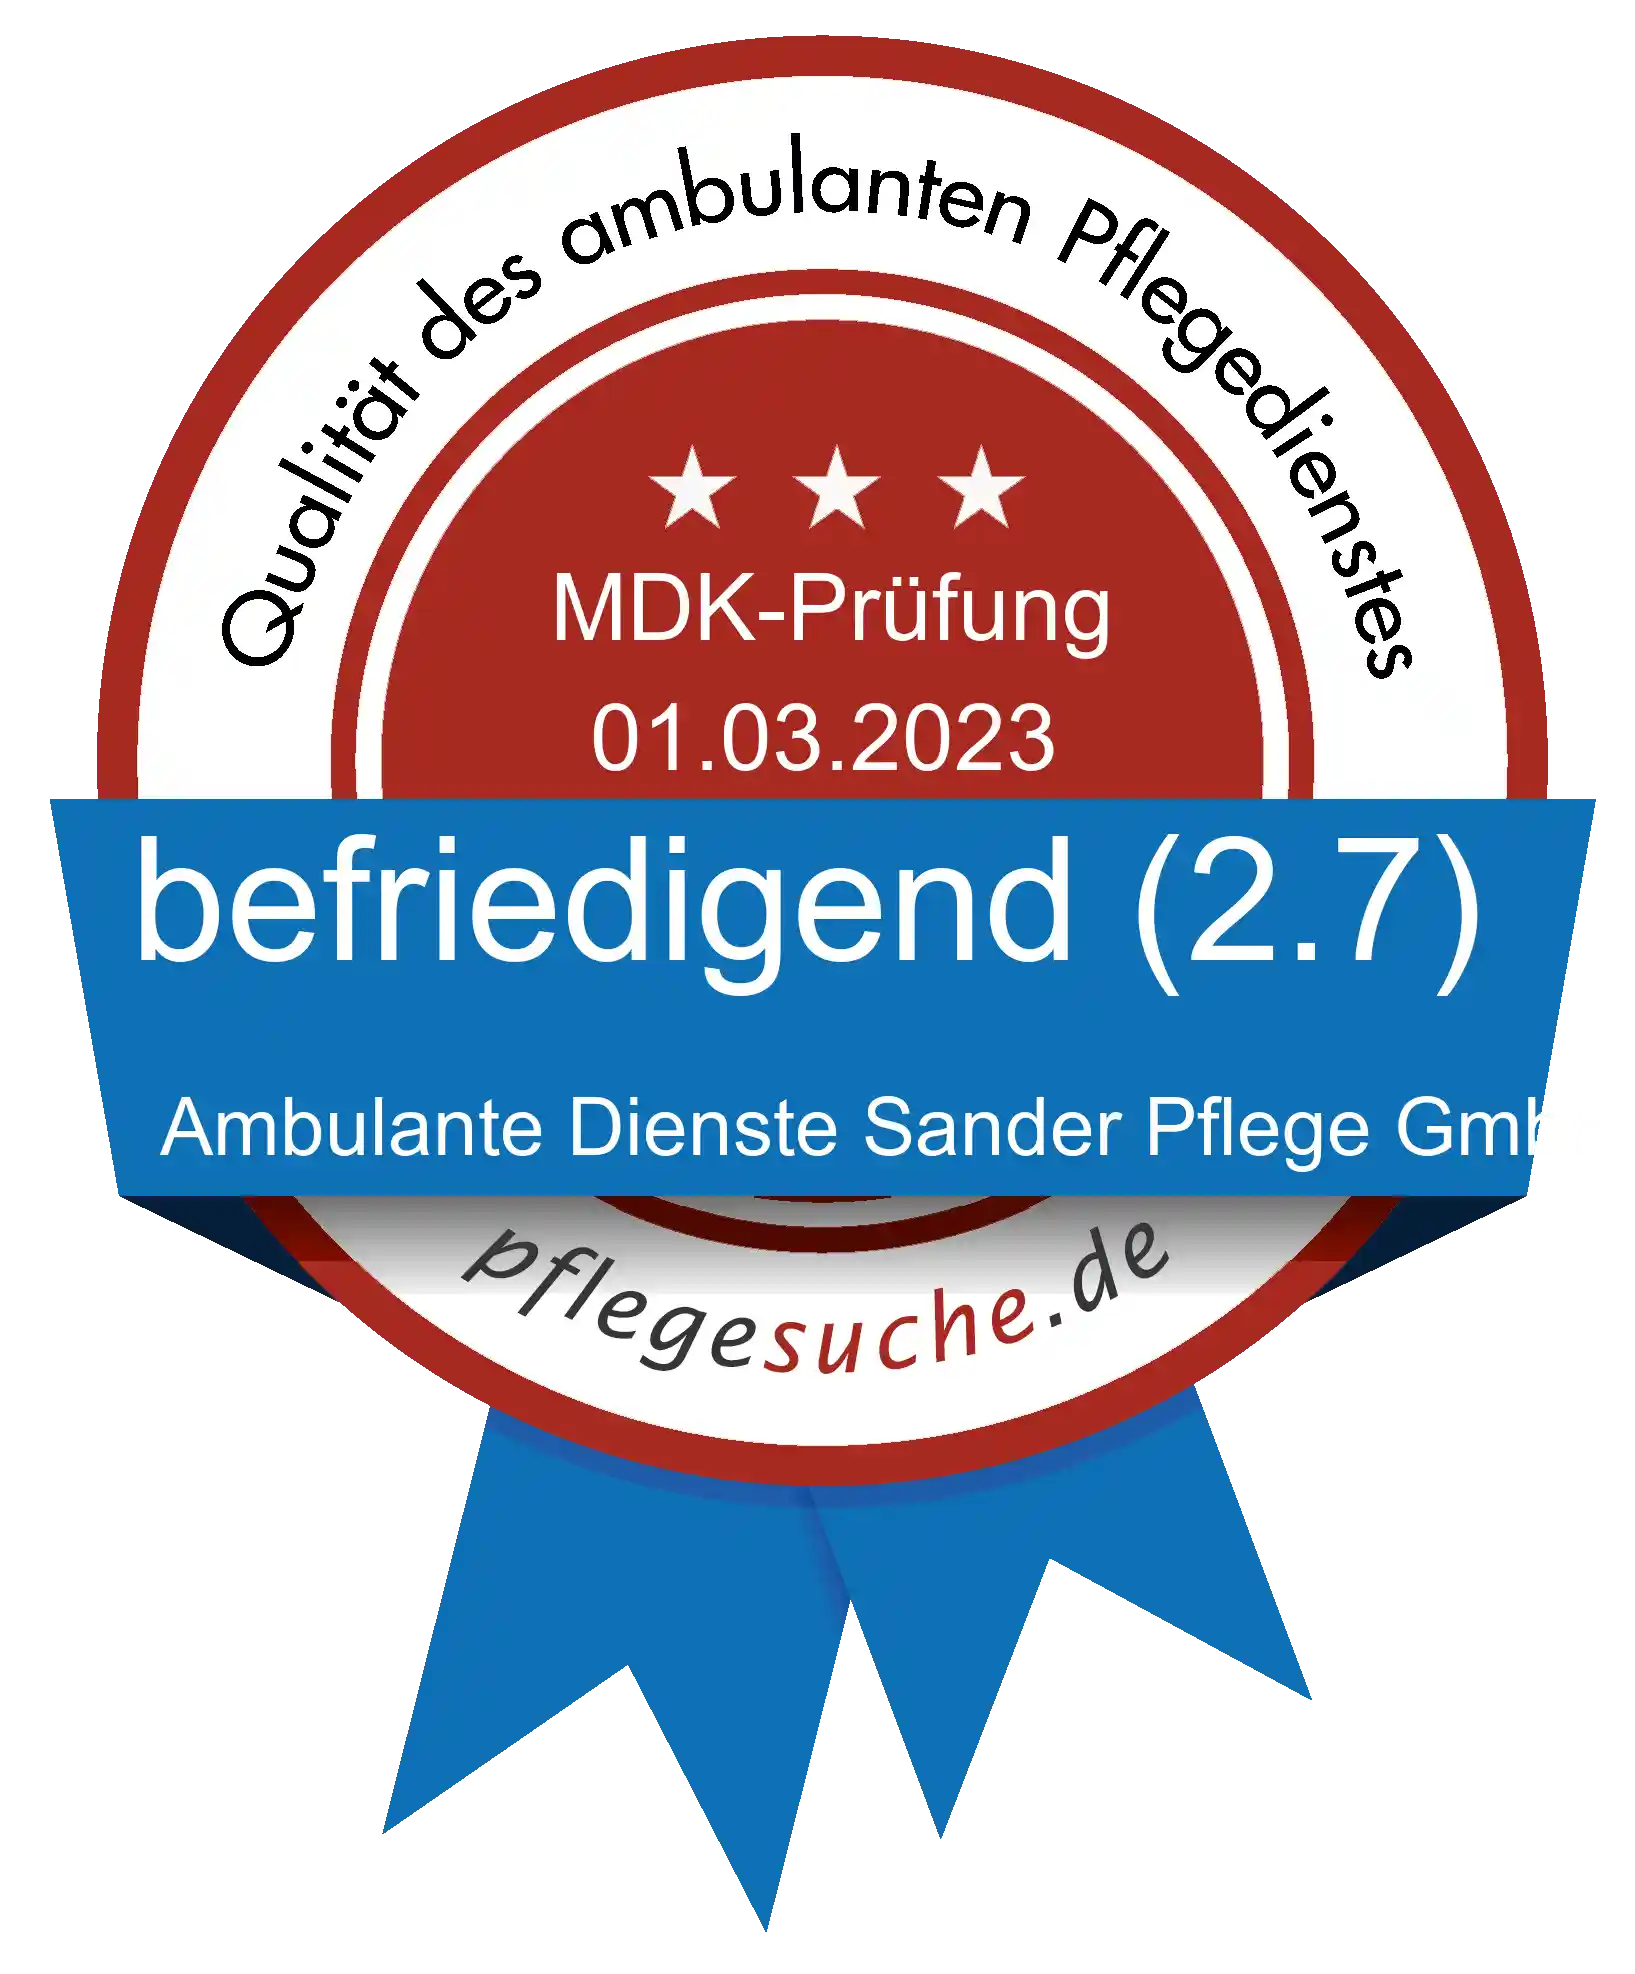 Siegel Benotung: Ambulante Dienste Sander Pflege GmbH